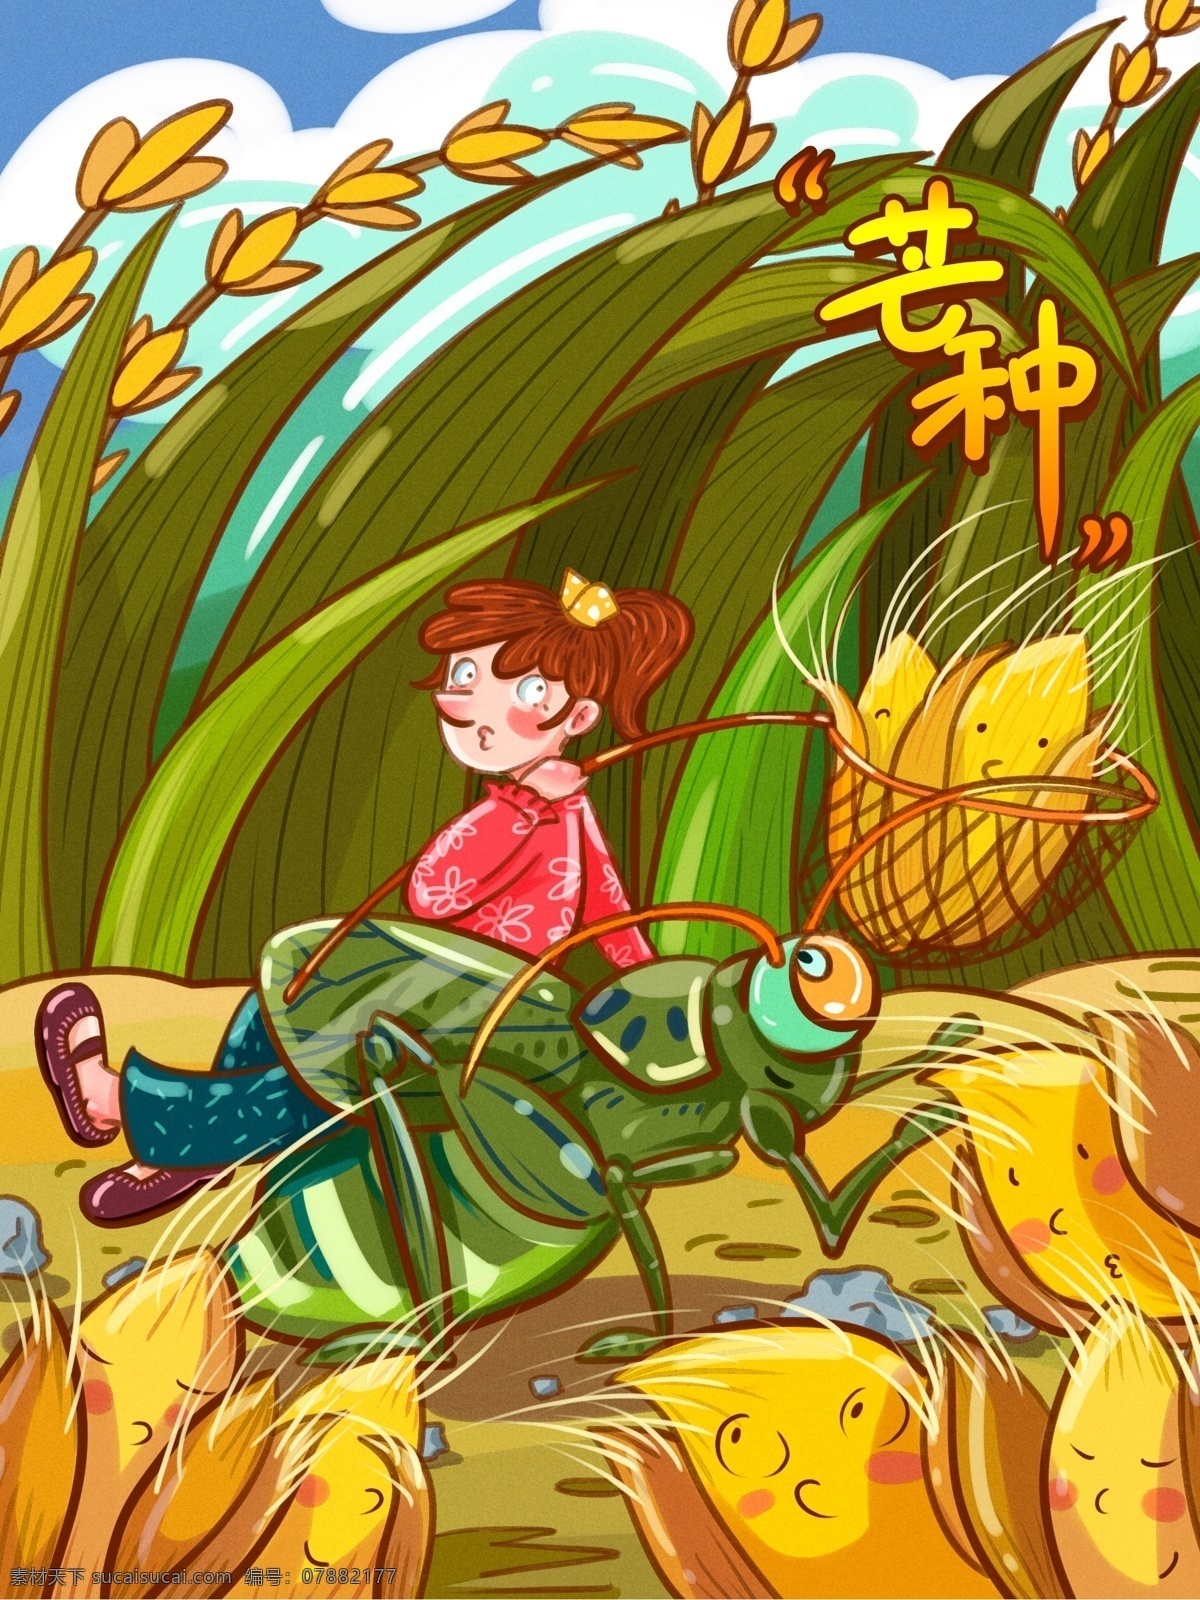 二十四节气 芒种 蟋蟀 稻谷 女孩 描 边卡 通 插画 虫 乡间 网虫 文案 黄 绿